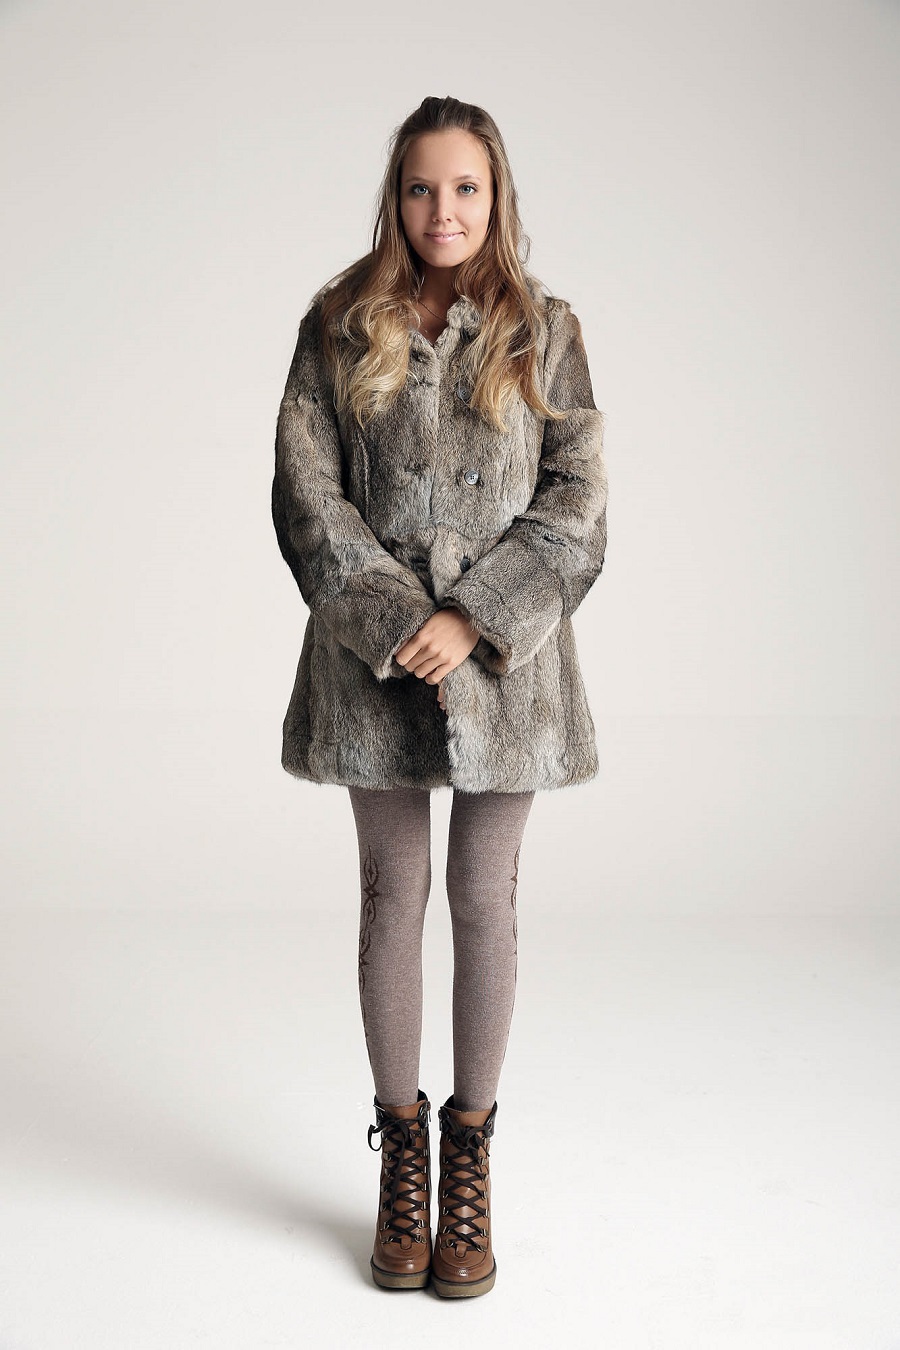 Model Women Fur Coats Grey Coat Brown Boots Boots Holding Hands Katya 900x1350